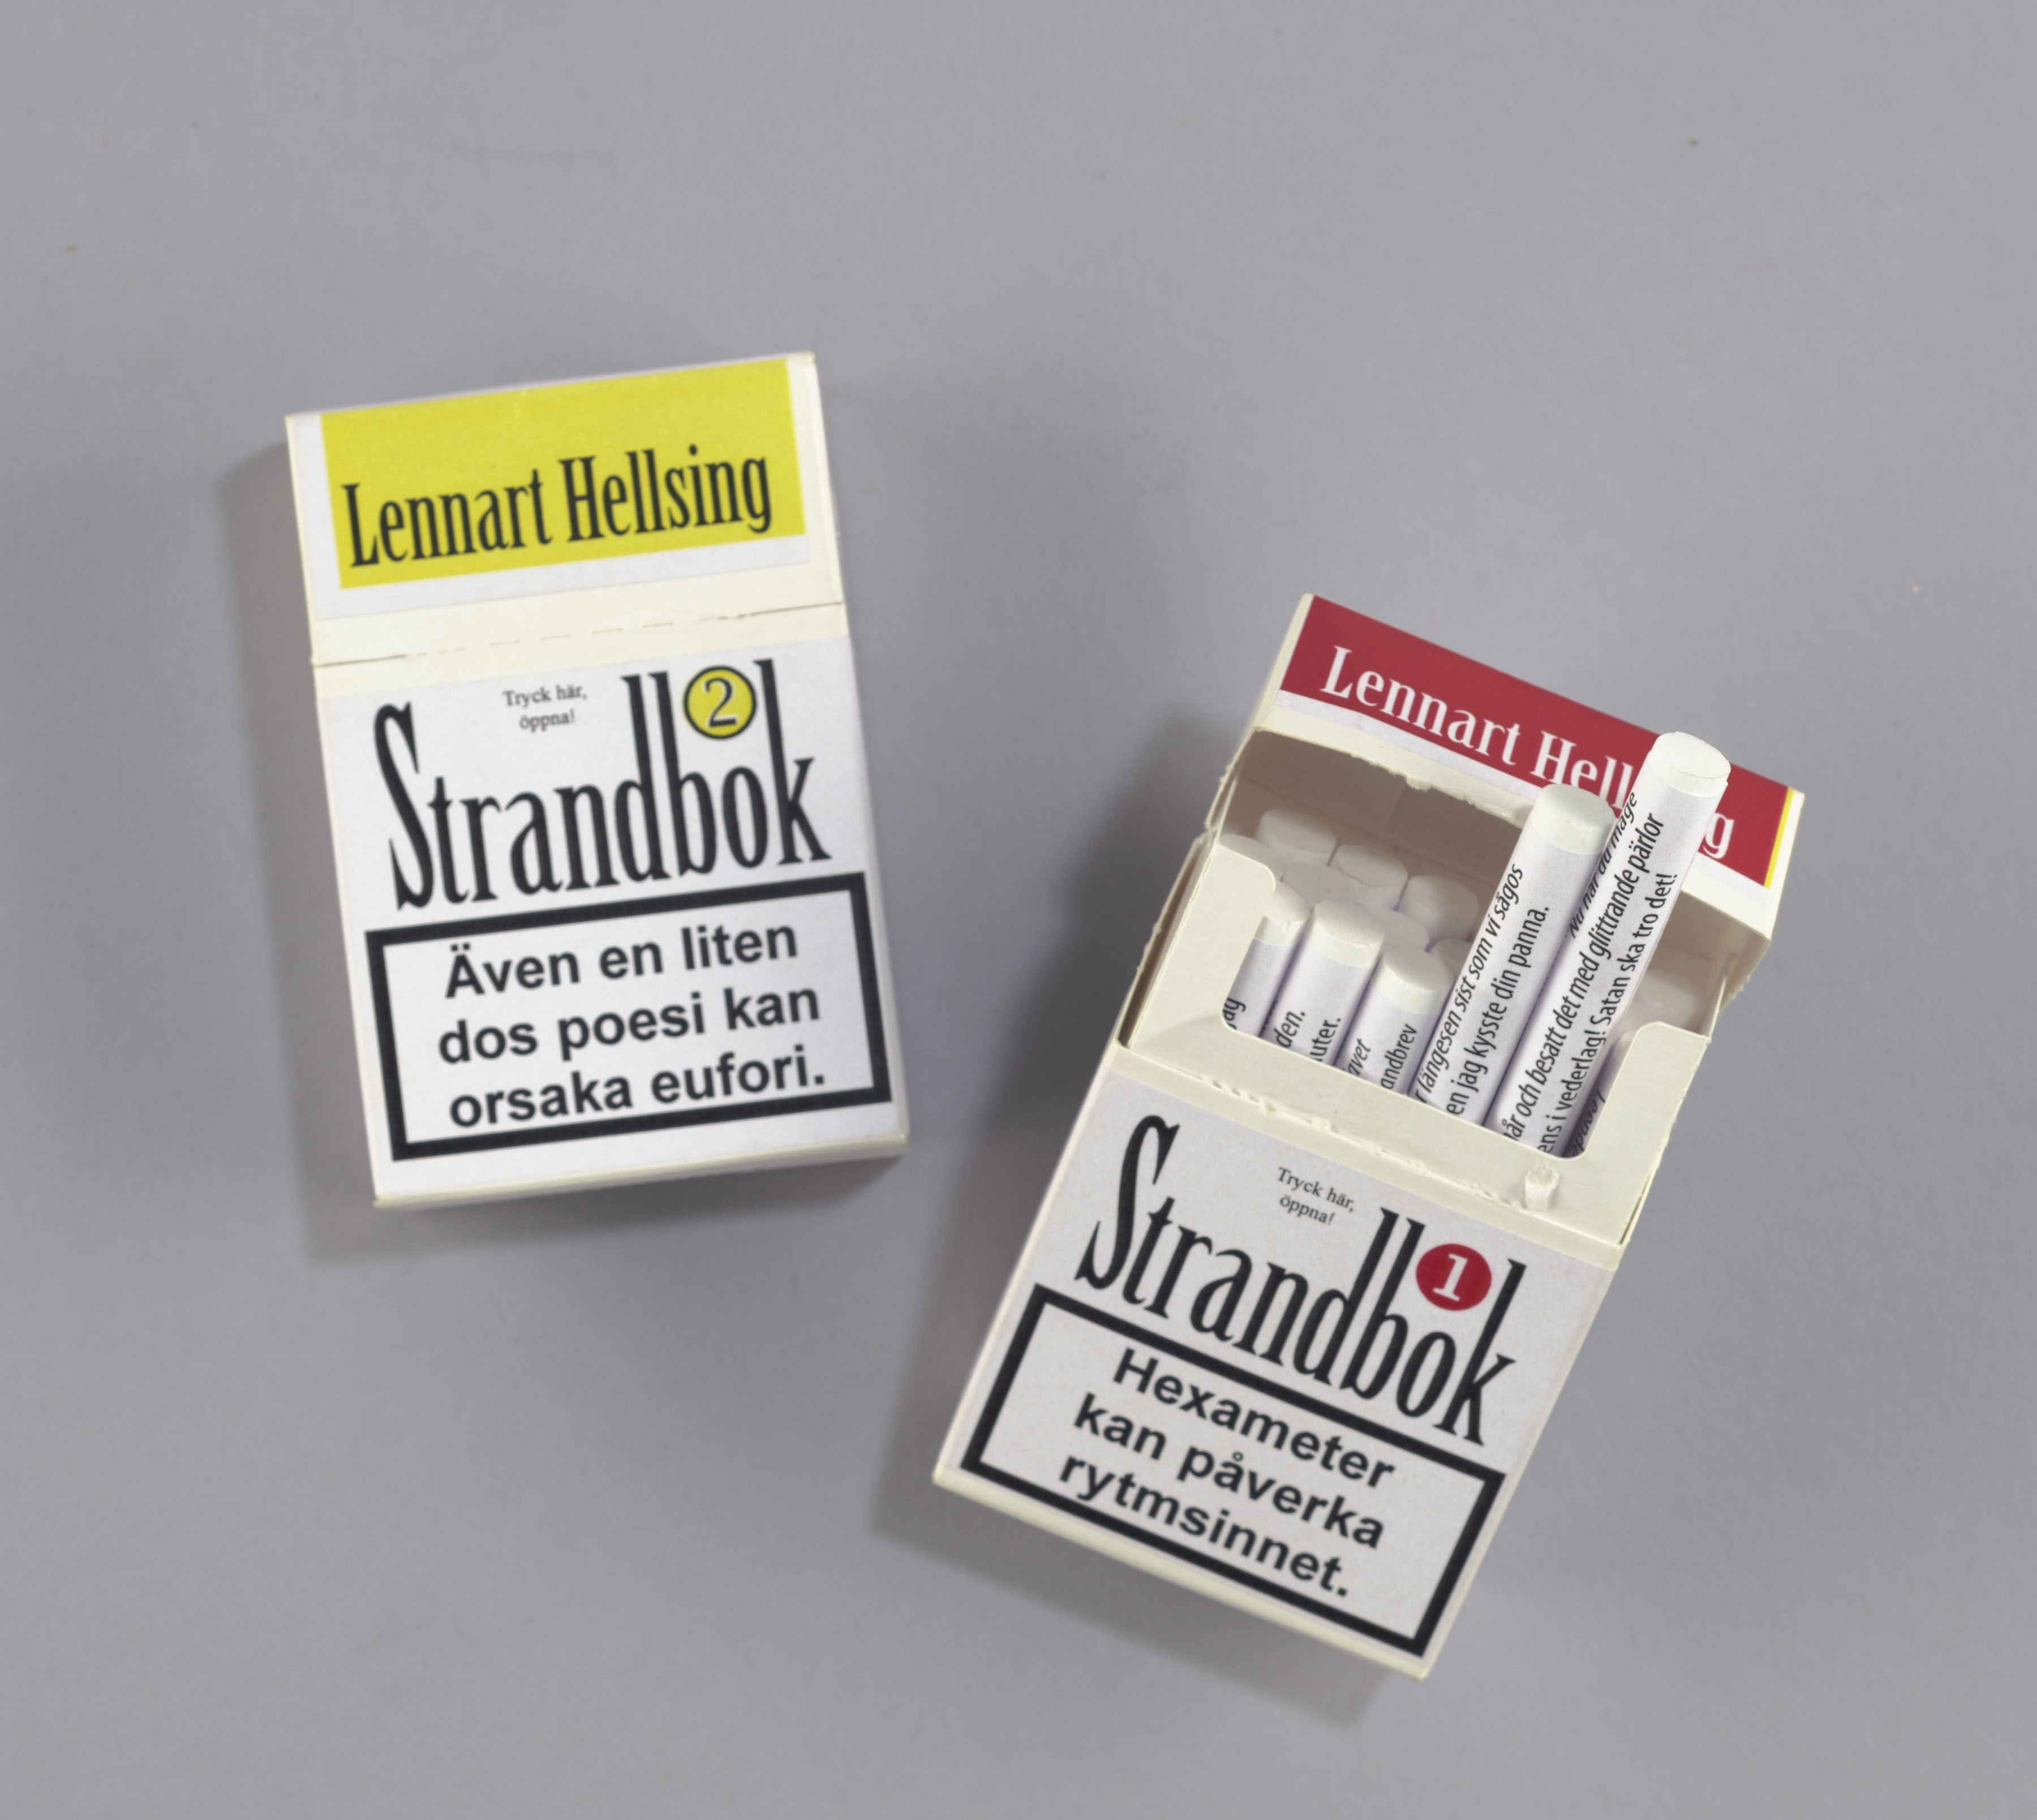 Lennart Hellsing Strandbok Cigaretter Foto: KB